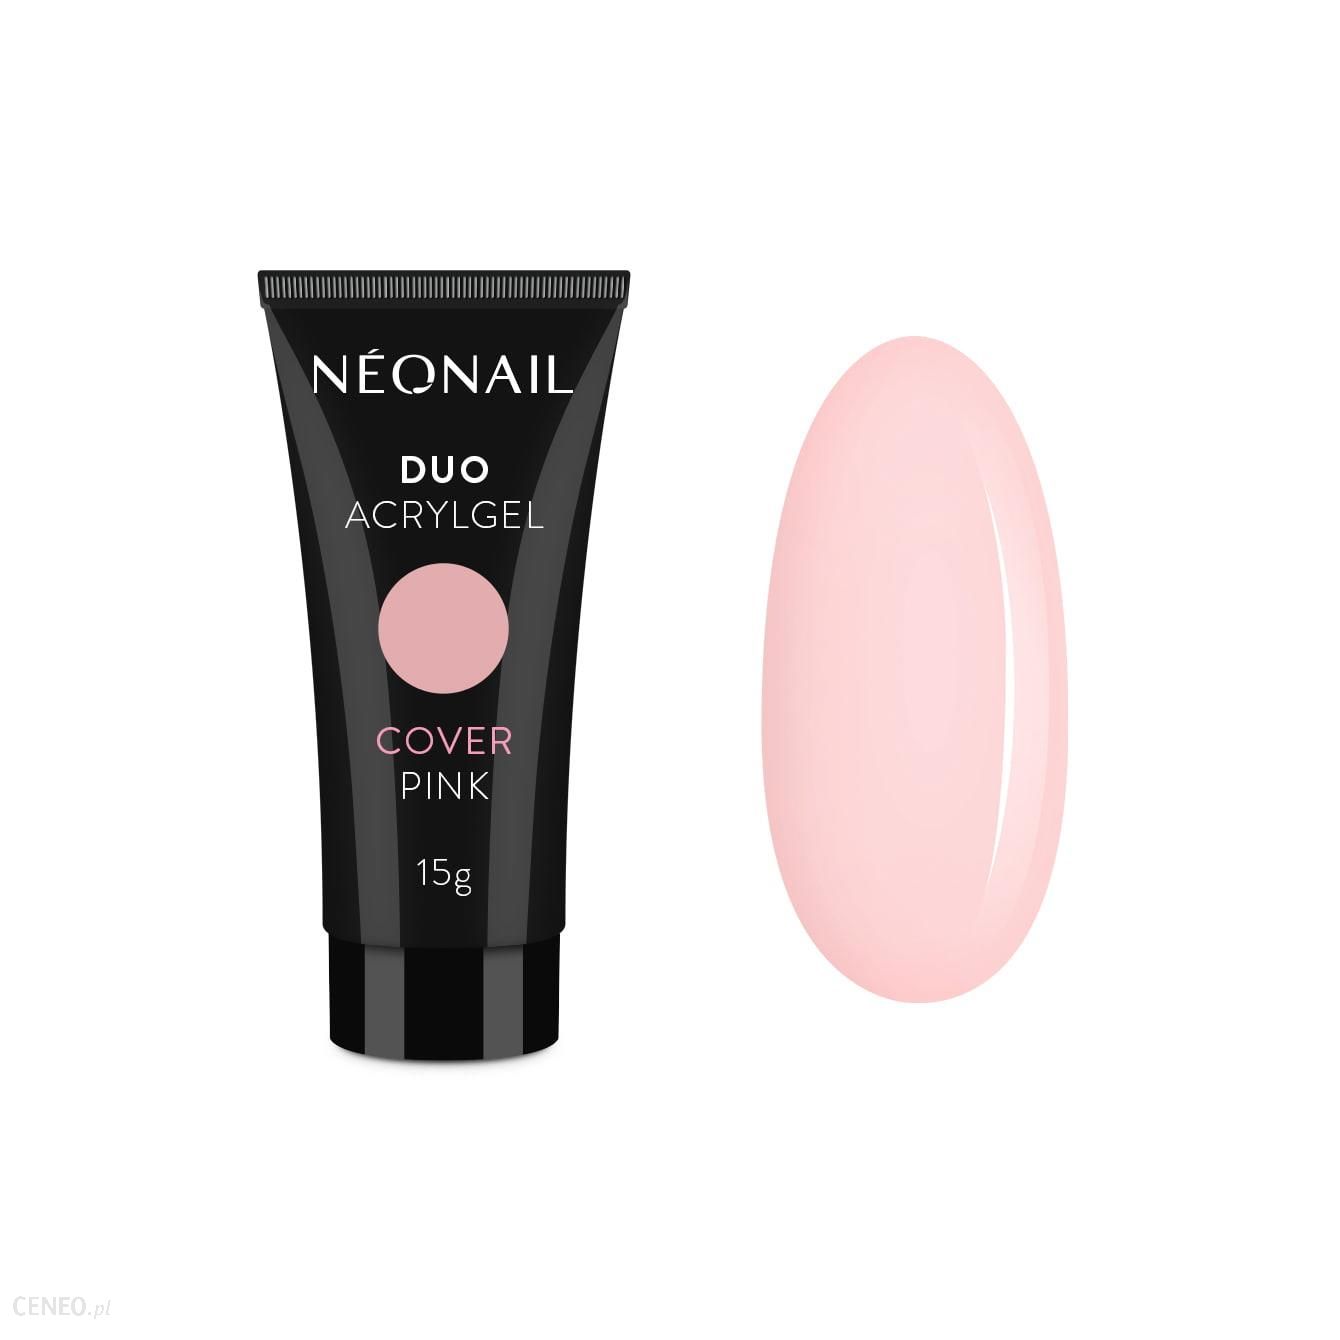 NEONAIL Duo Acrylgel Żel do utwardzania i przedłużania paznokci Cover Pink 15G